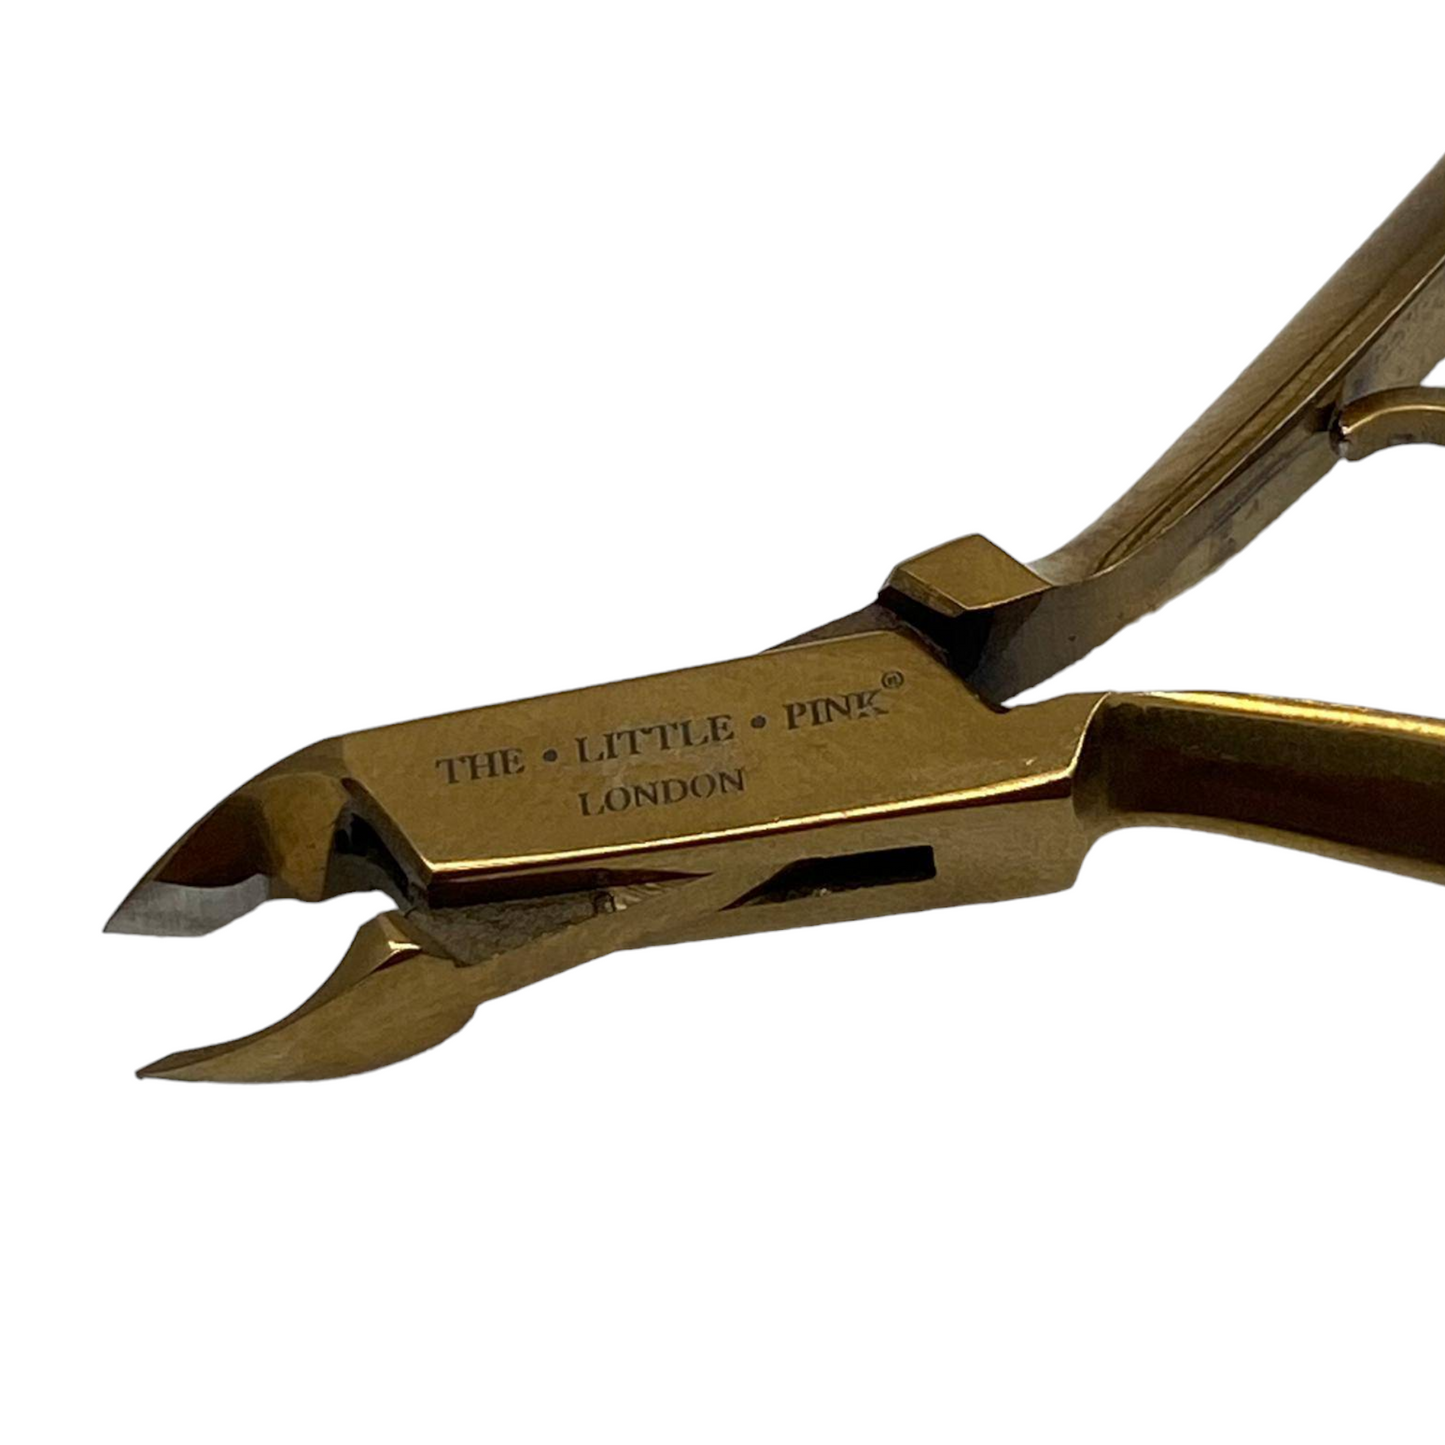 Titanuim gold Cutilce Nipper with clamp